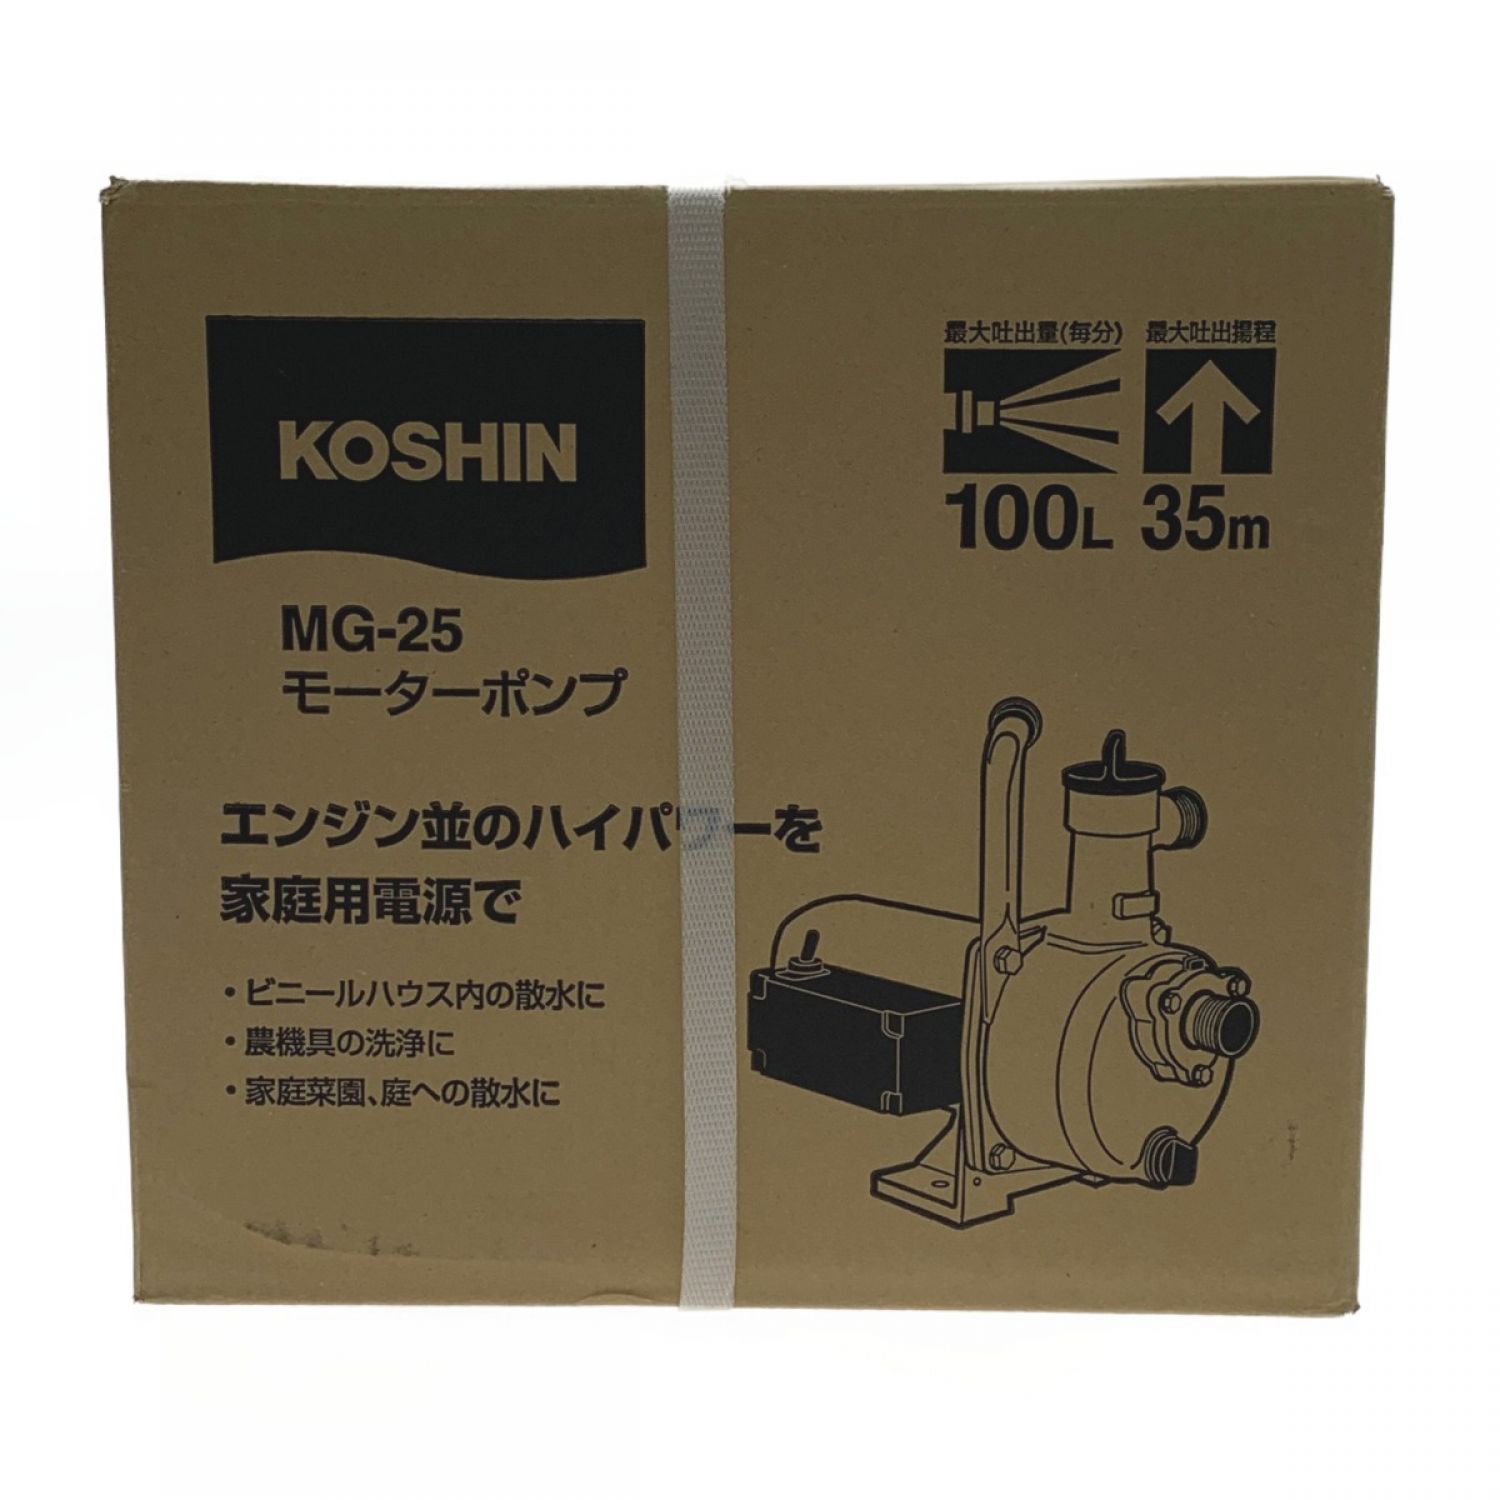 水中ポンプ 100V モーターポンプ 工進 ポンプ KOSHIN コーシン MP-25 灌水 ポンプ 排水 ポンプ 散水 - 3